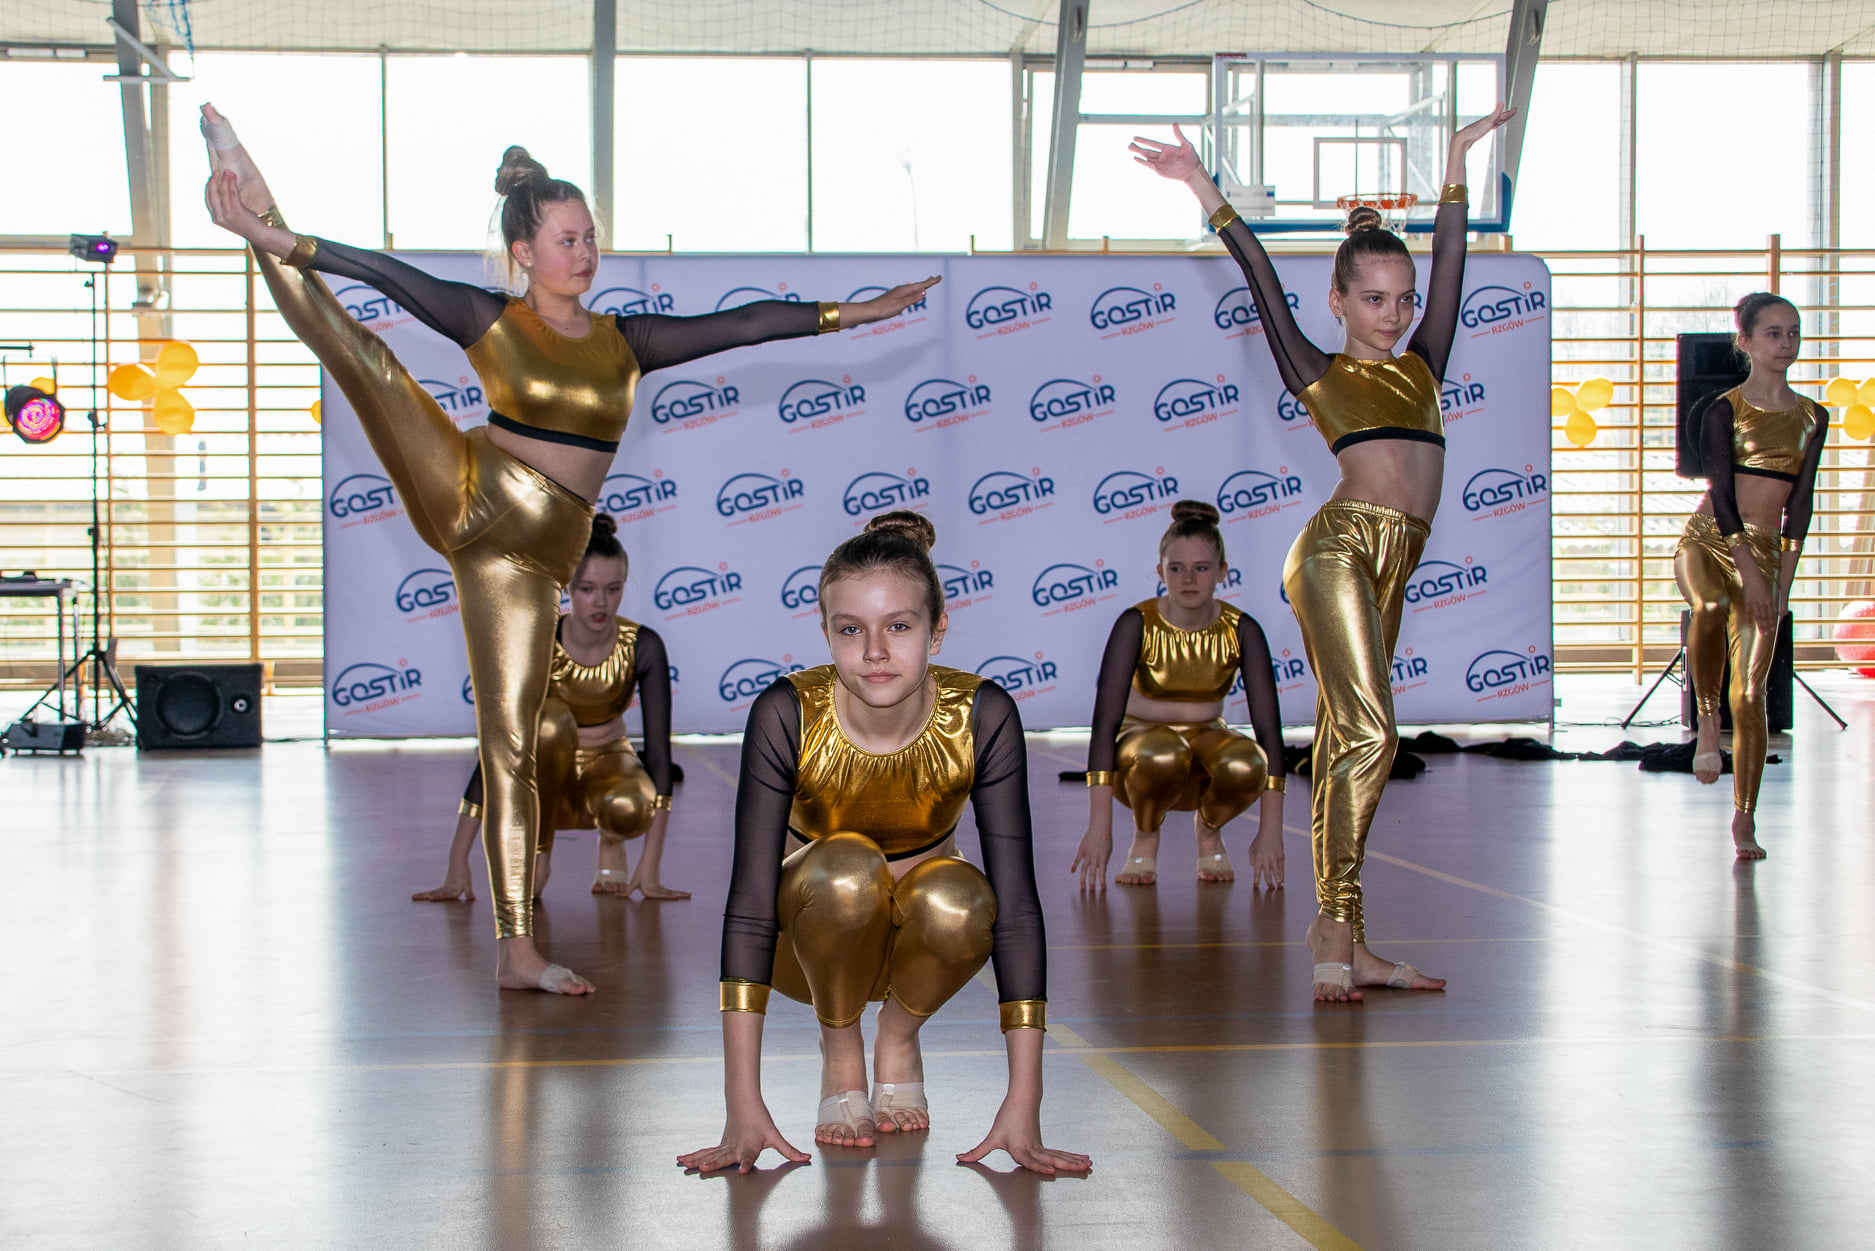 Na zdjęciu pokazy taneczne grupy cheerleaderek w złotych strojach